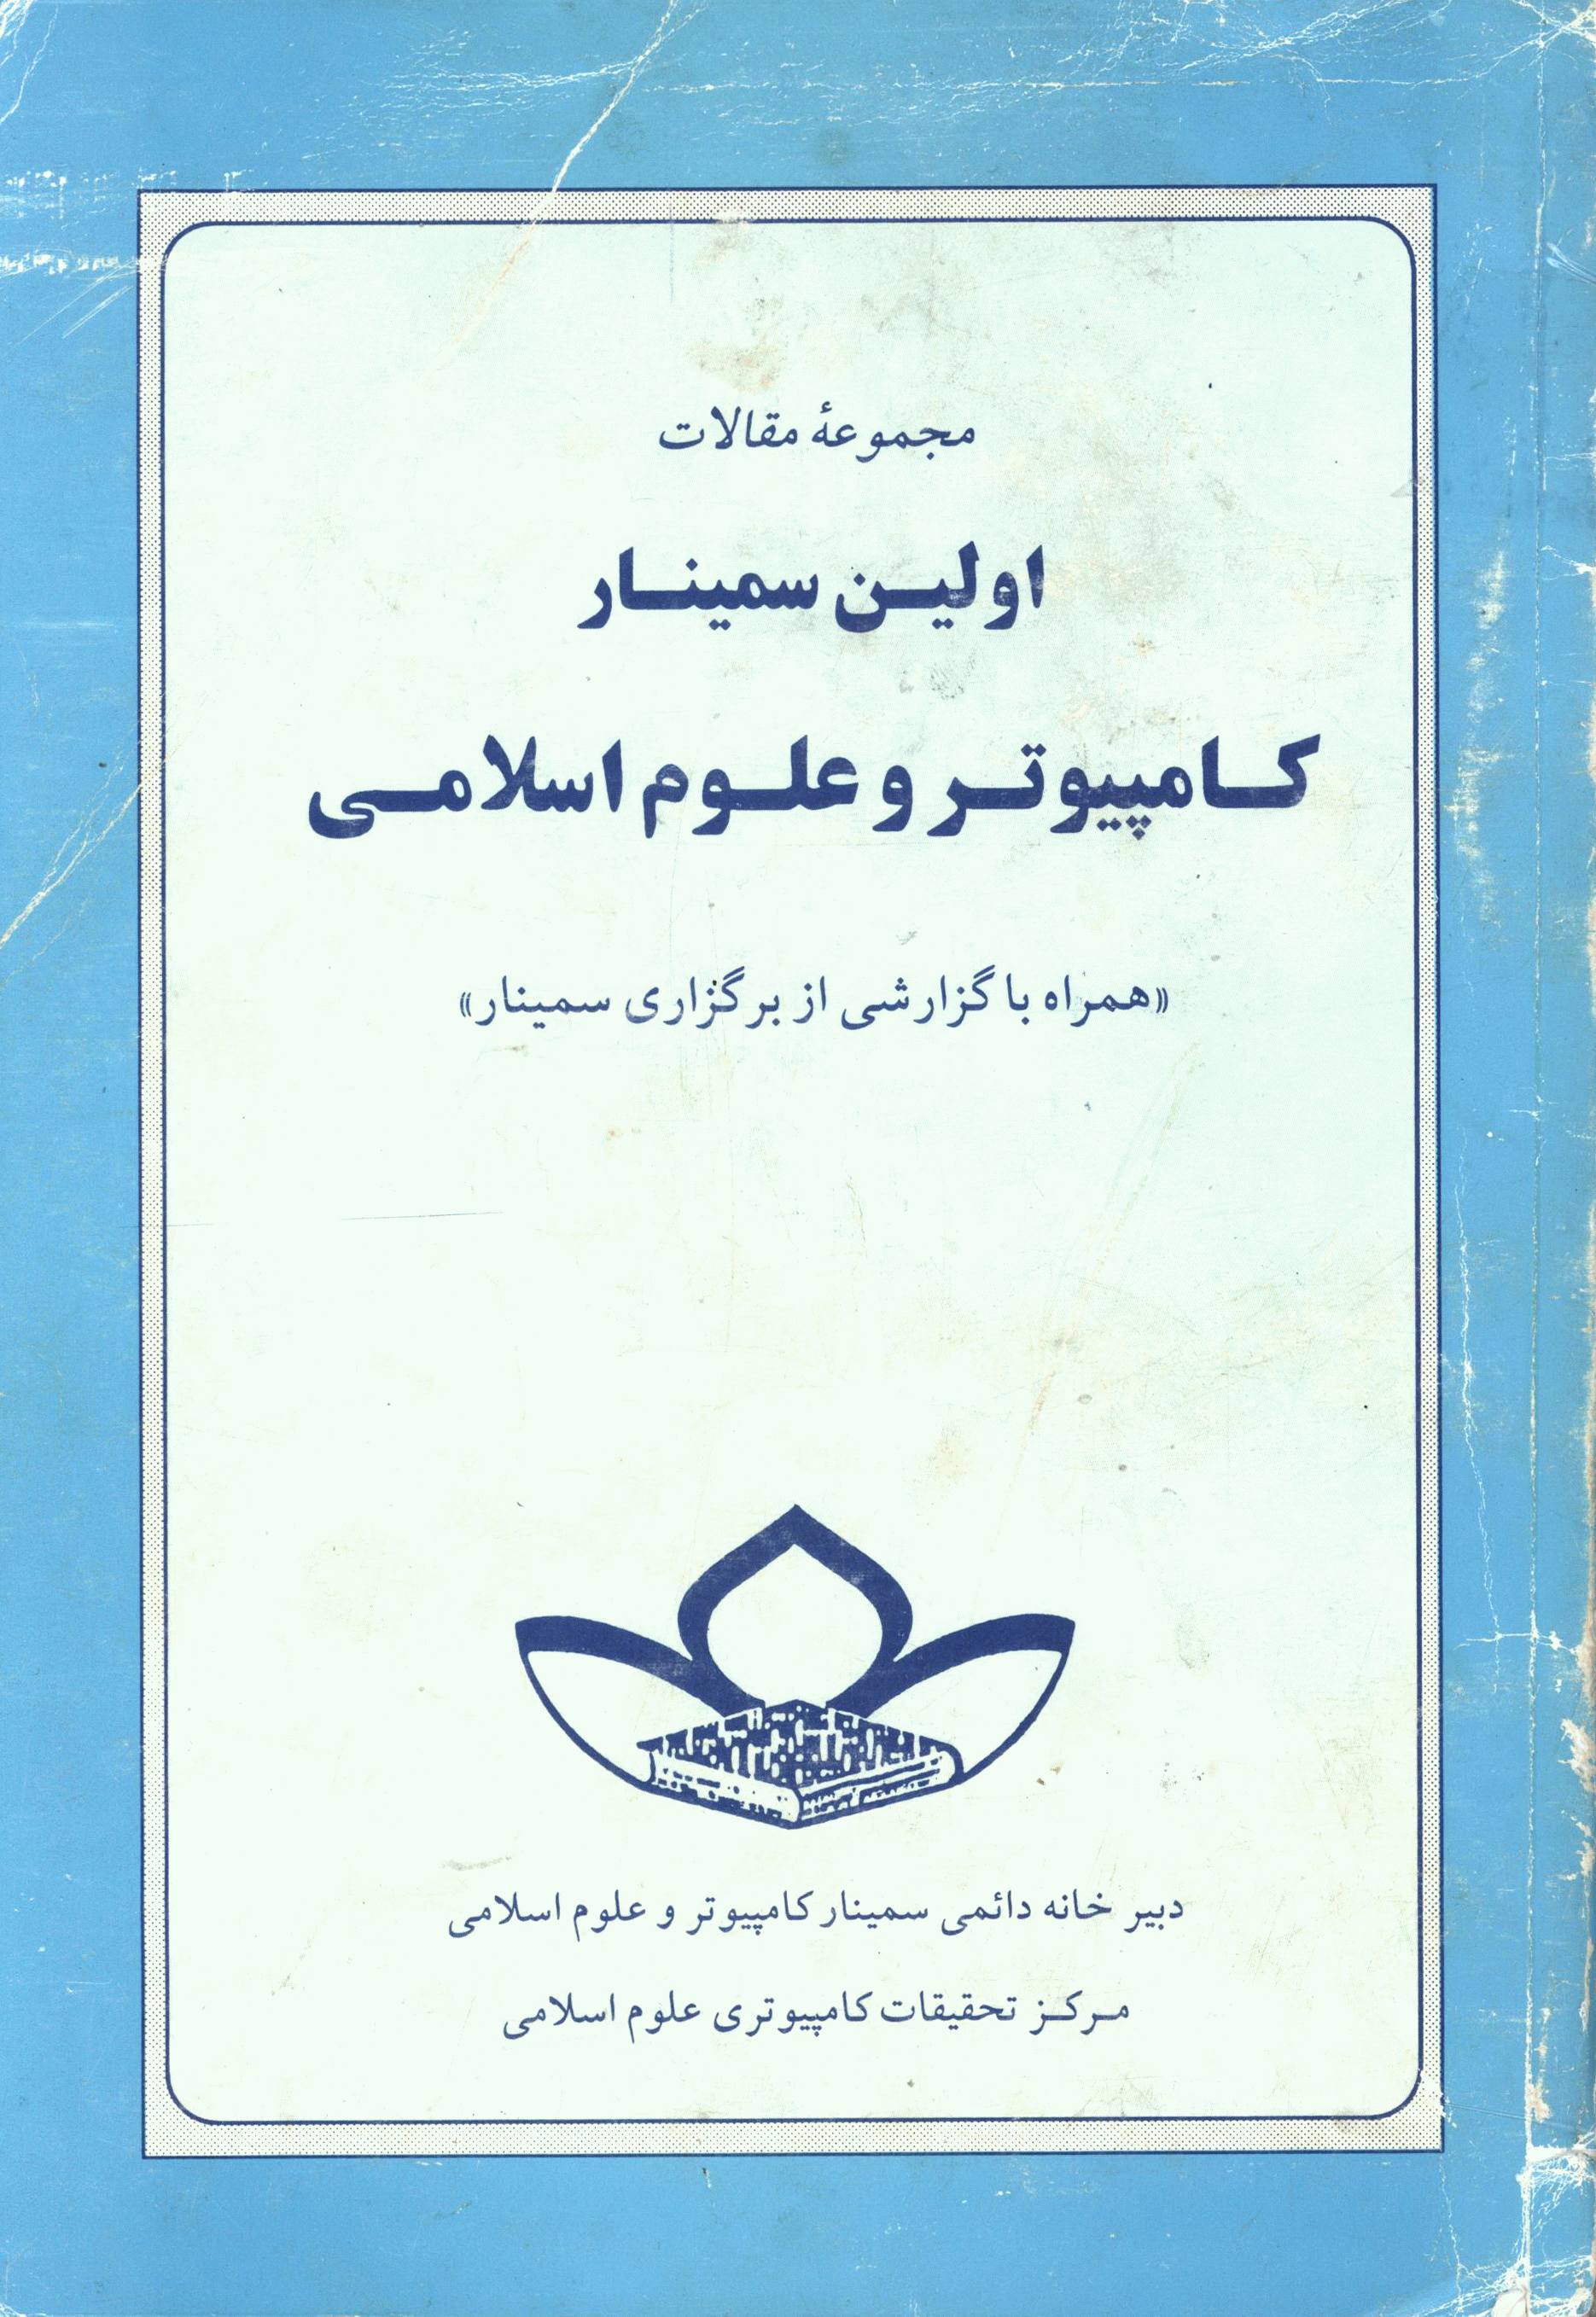 سمینار کامپیوتر و علوم اسلامی - مجموعه مقالات اولین سمینار کامپیوتر و علوم اسلامی